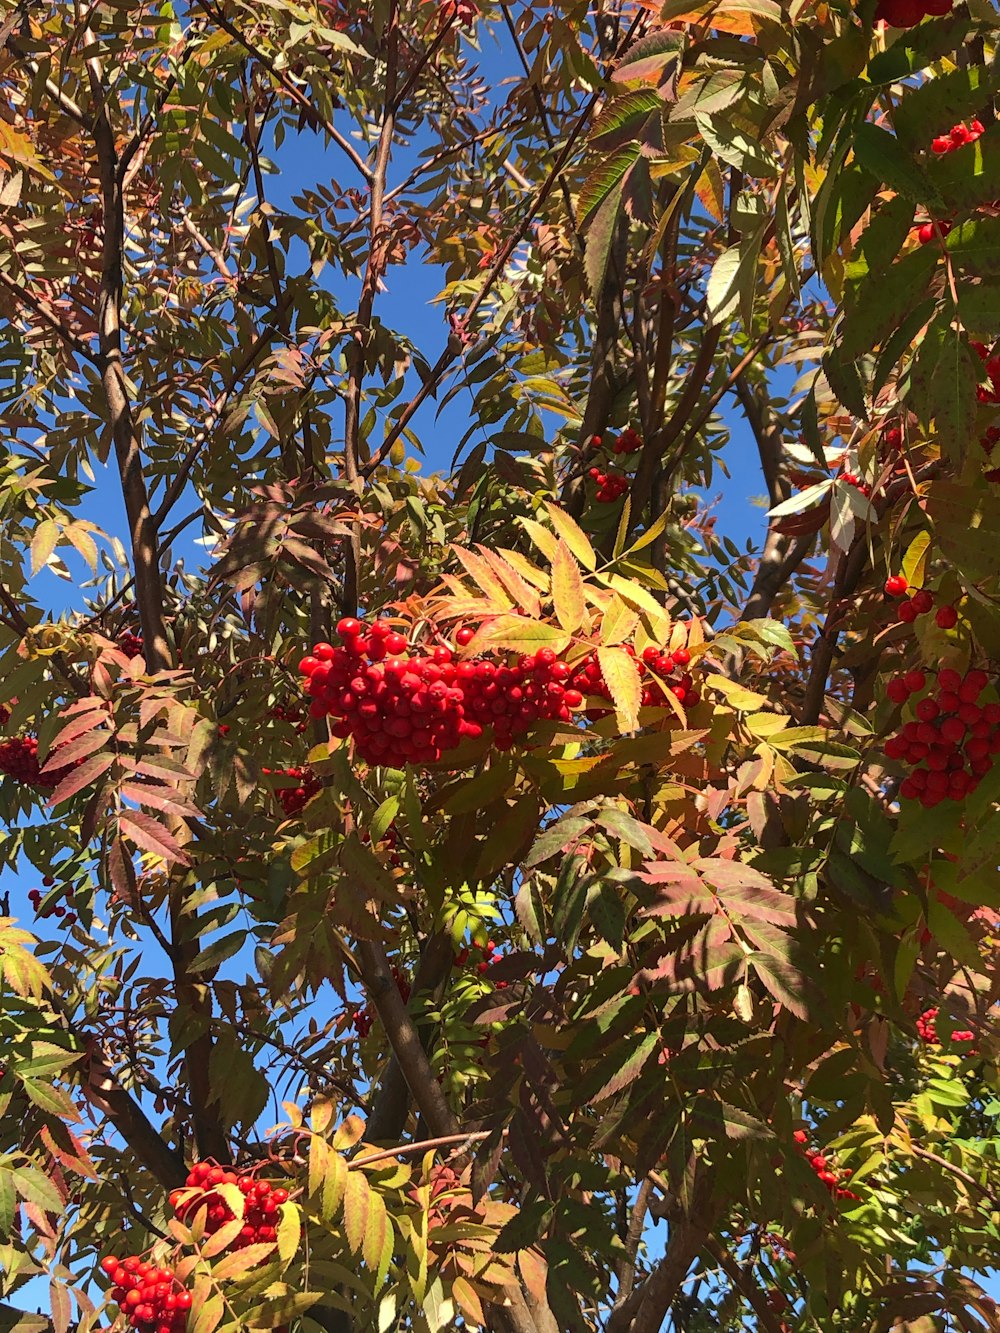 푸른 하늘 아래 빨간 열매가 가득한 나무